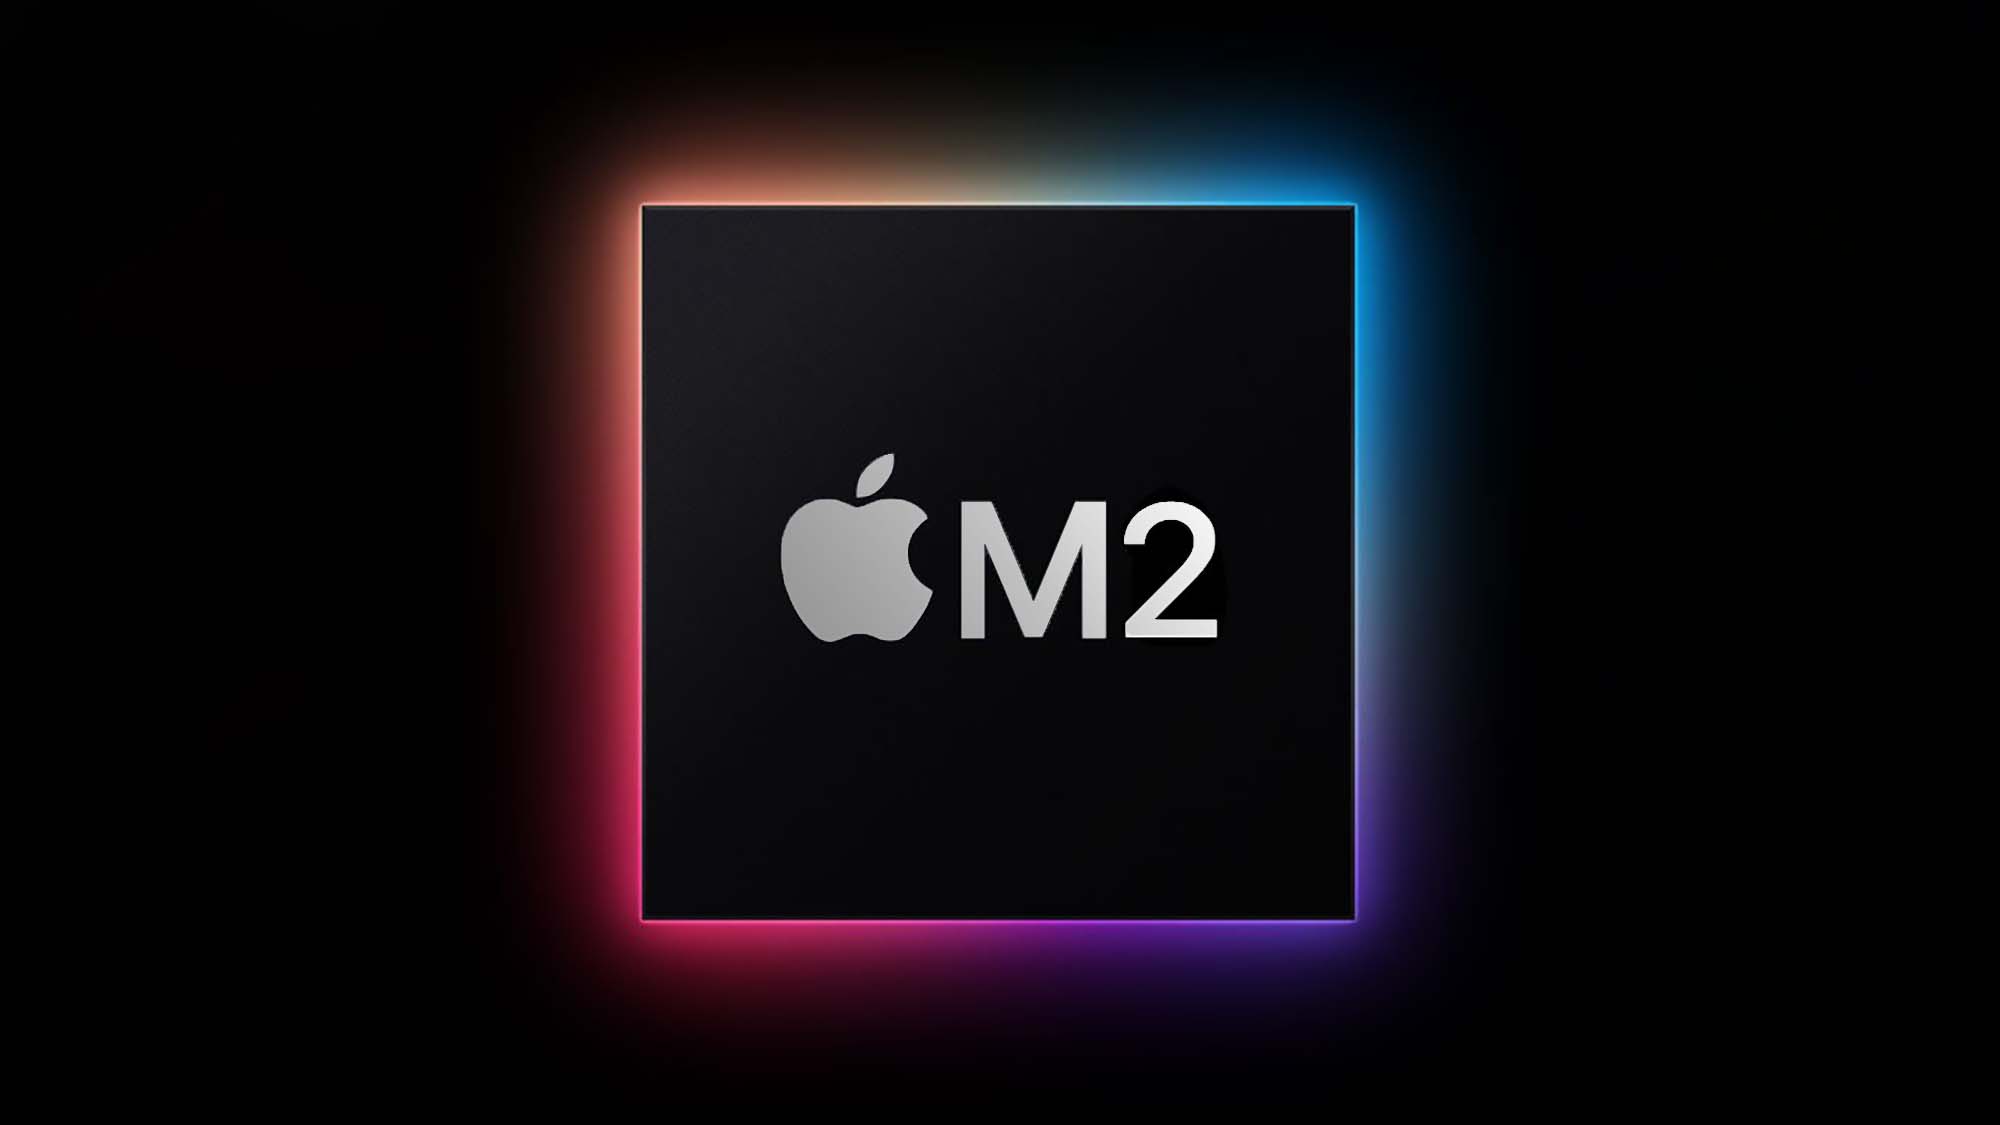 یک مربع سیاه که توسط نور رنگین کمان حلقه شده است و لوگوی اپل و M2 در مرکز آن